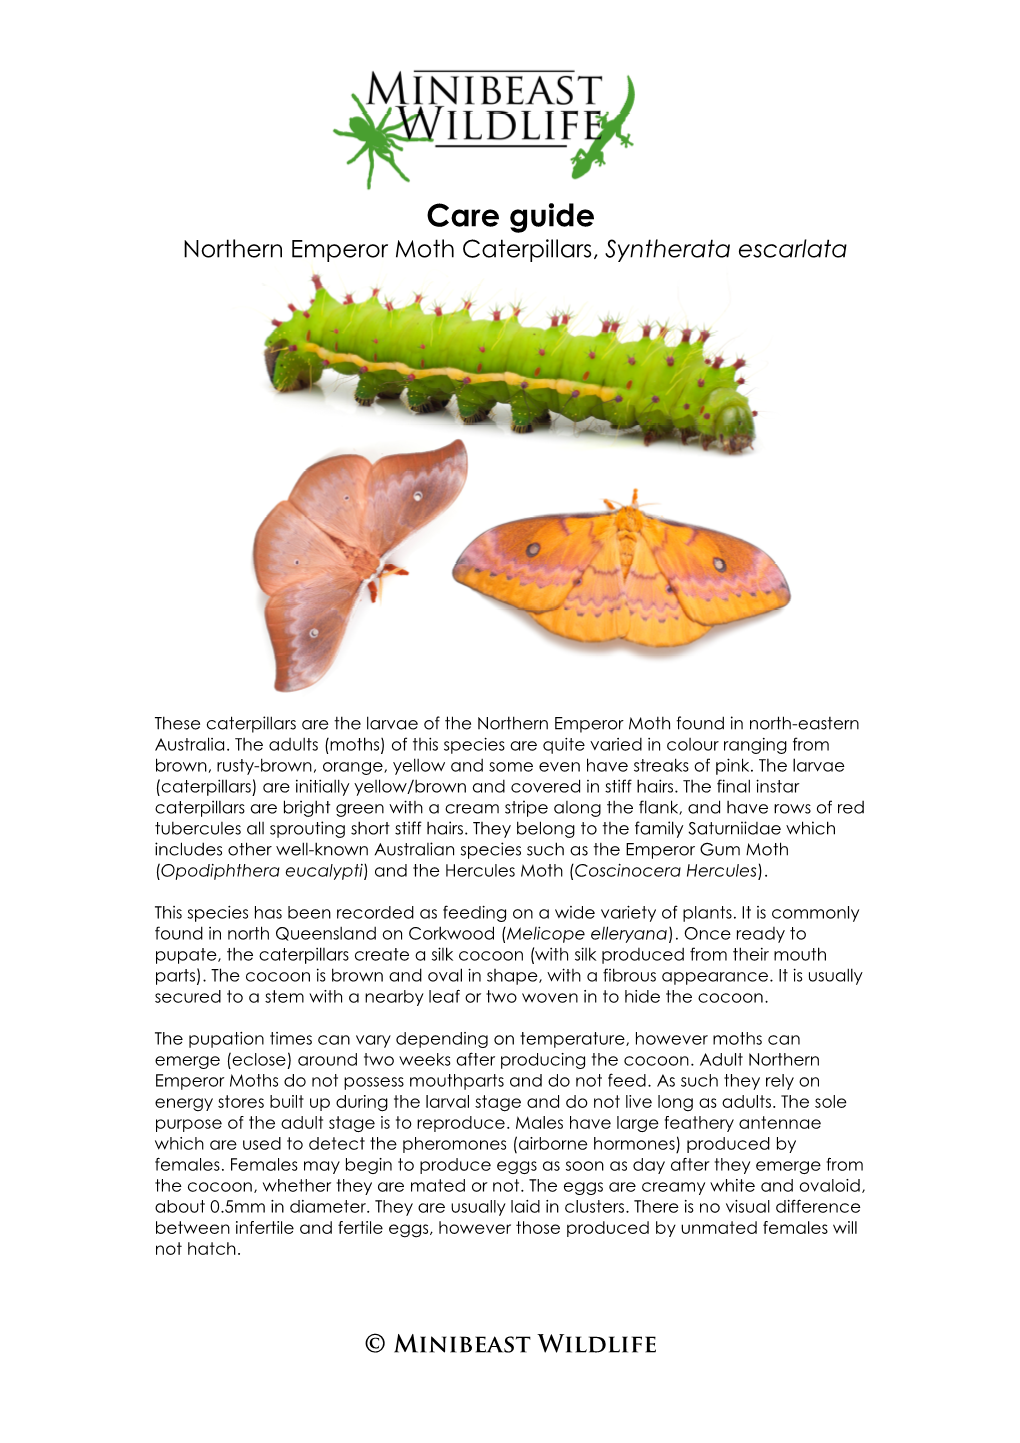 Care Guide Northern Emperor Moth Caterpillars, Syntherata Escarlata